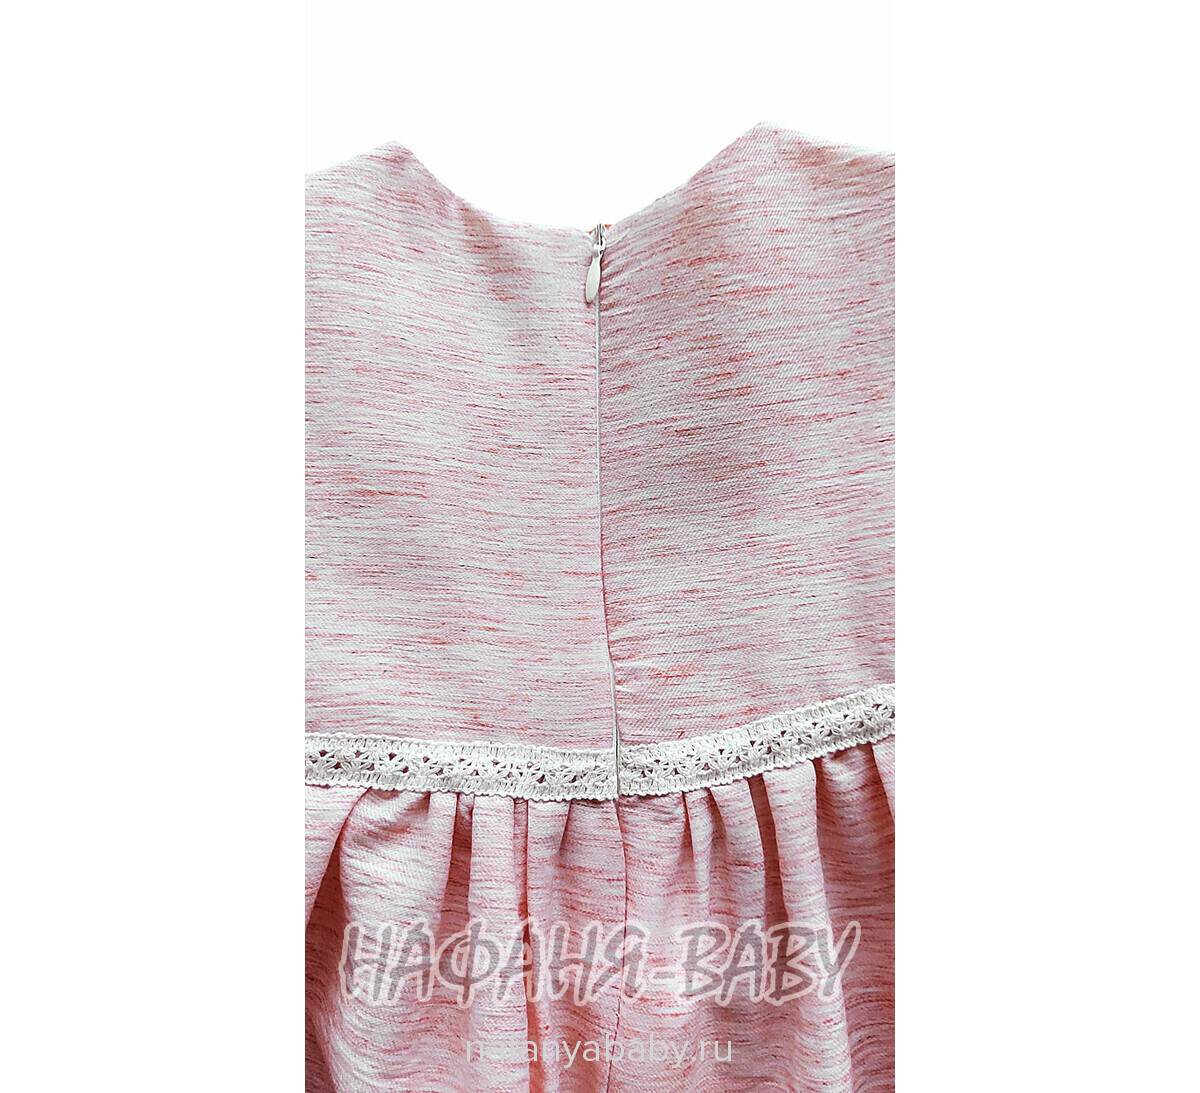 Нарядное платье A.Y.D. арт: 803, 1-4 года, цвет розовый меланж, оптом Турция